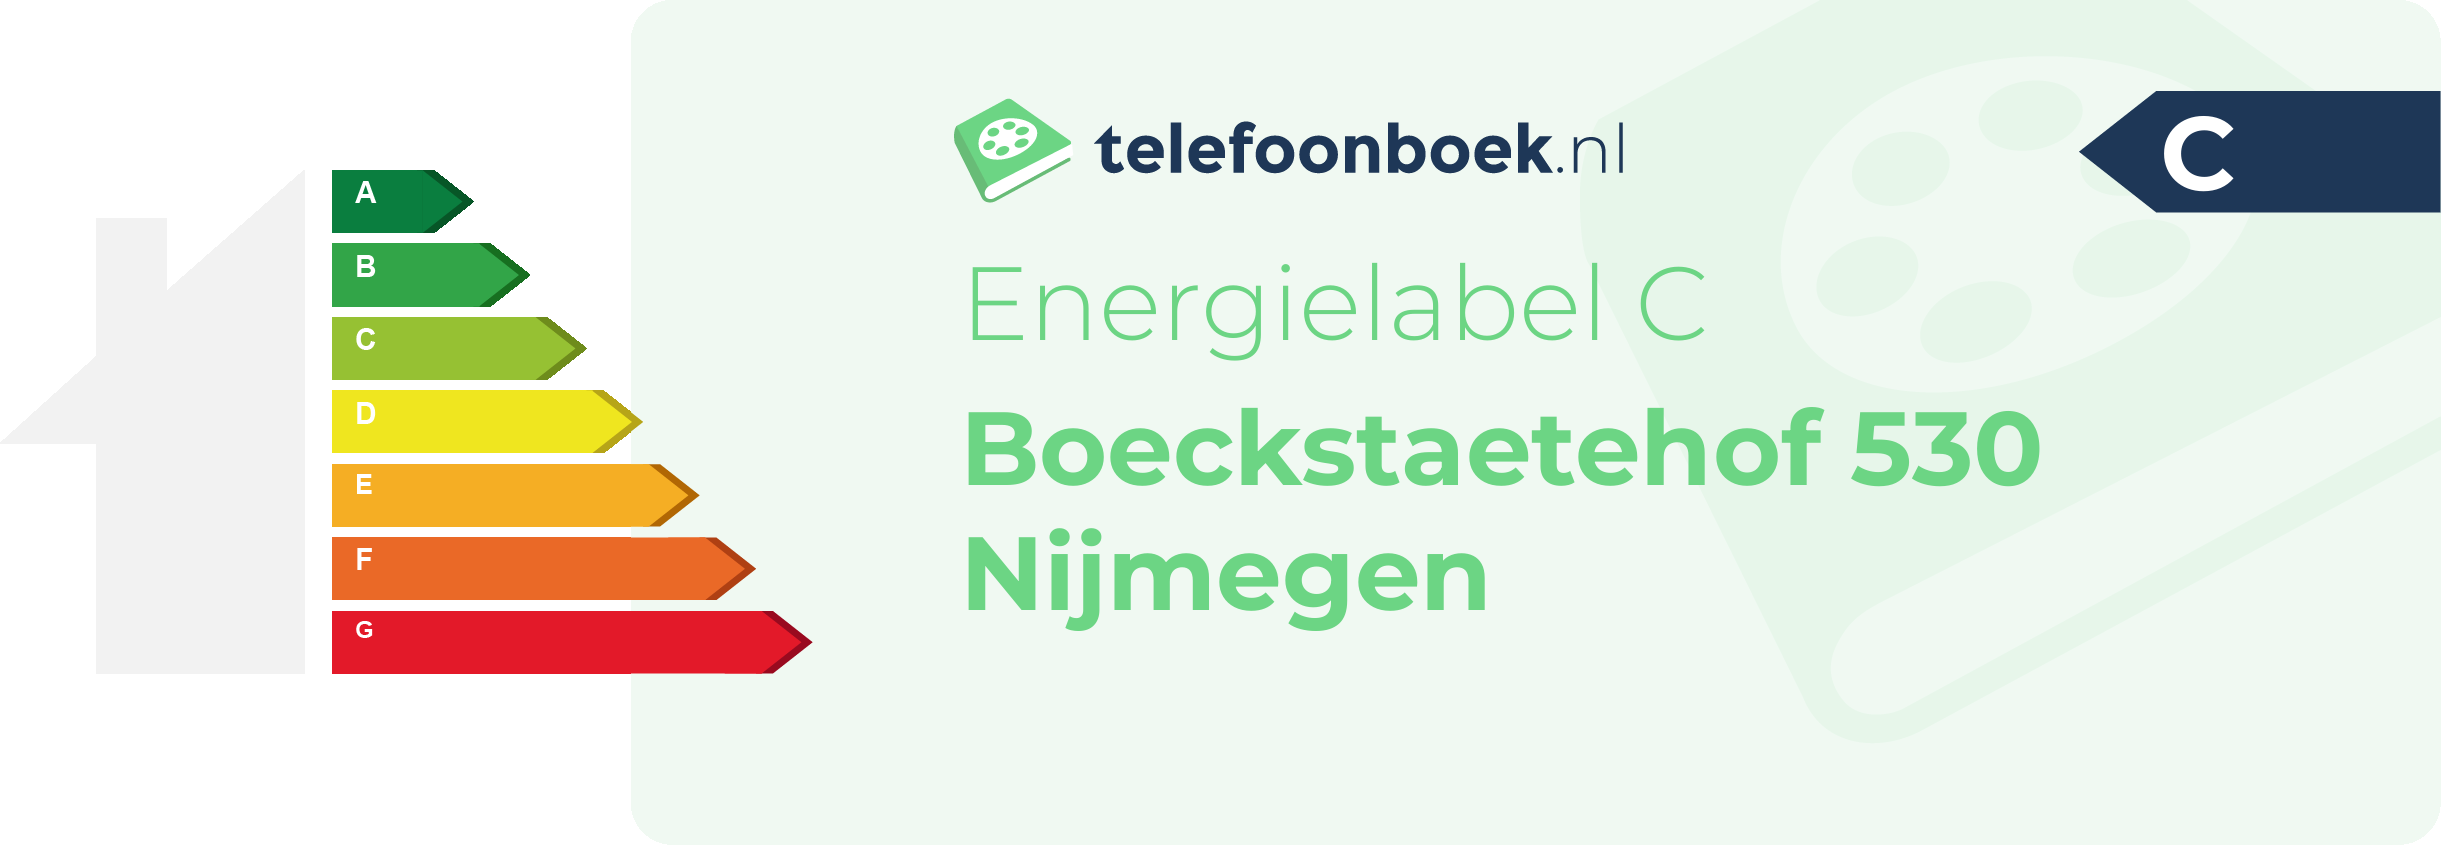 Energielabel Boeckstaetehof 530 Nijmegen